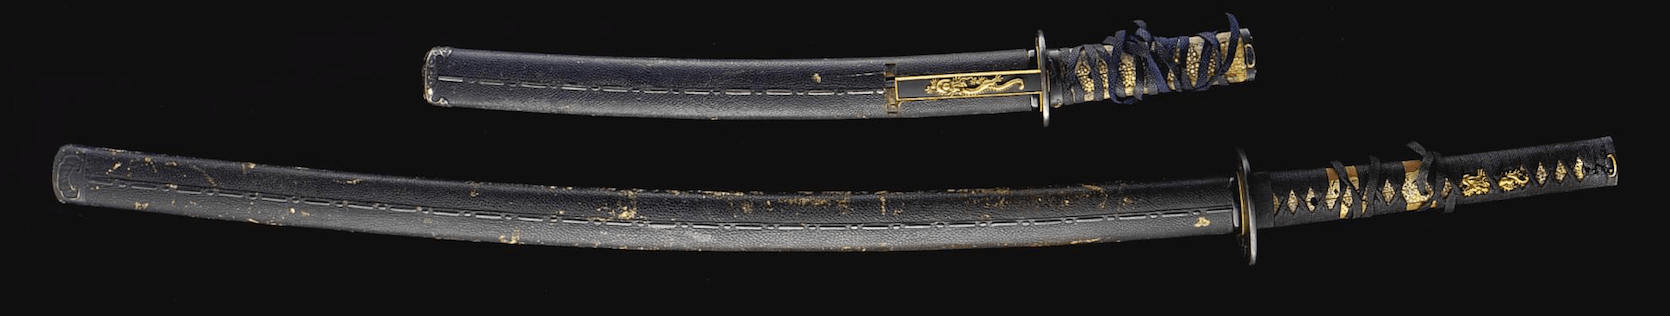 антикварный японский меч